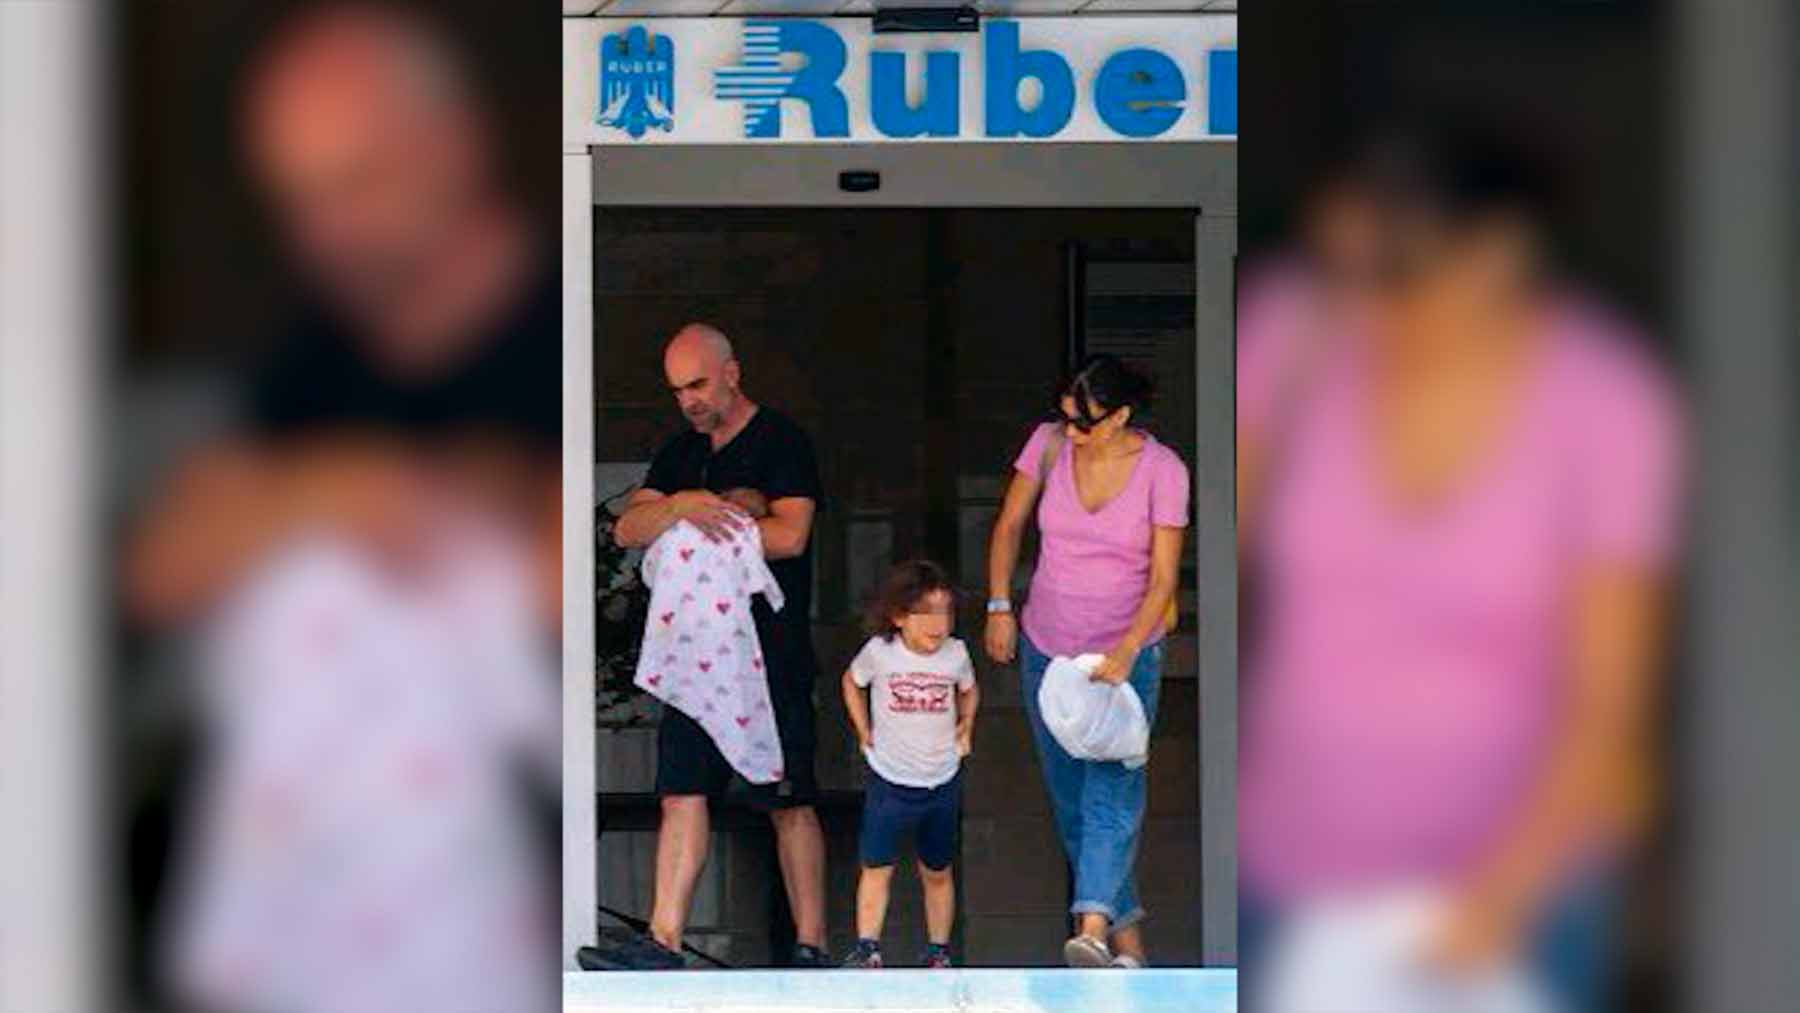 El actor Luis Tosar saliendo de la clínica Ruber junto a su mujer y sus dos hijos.